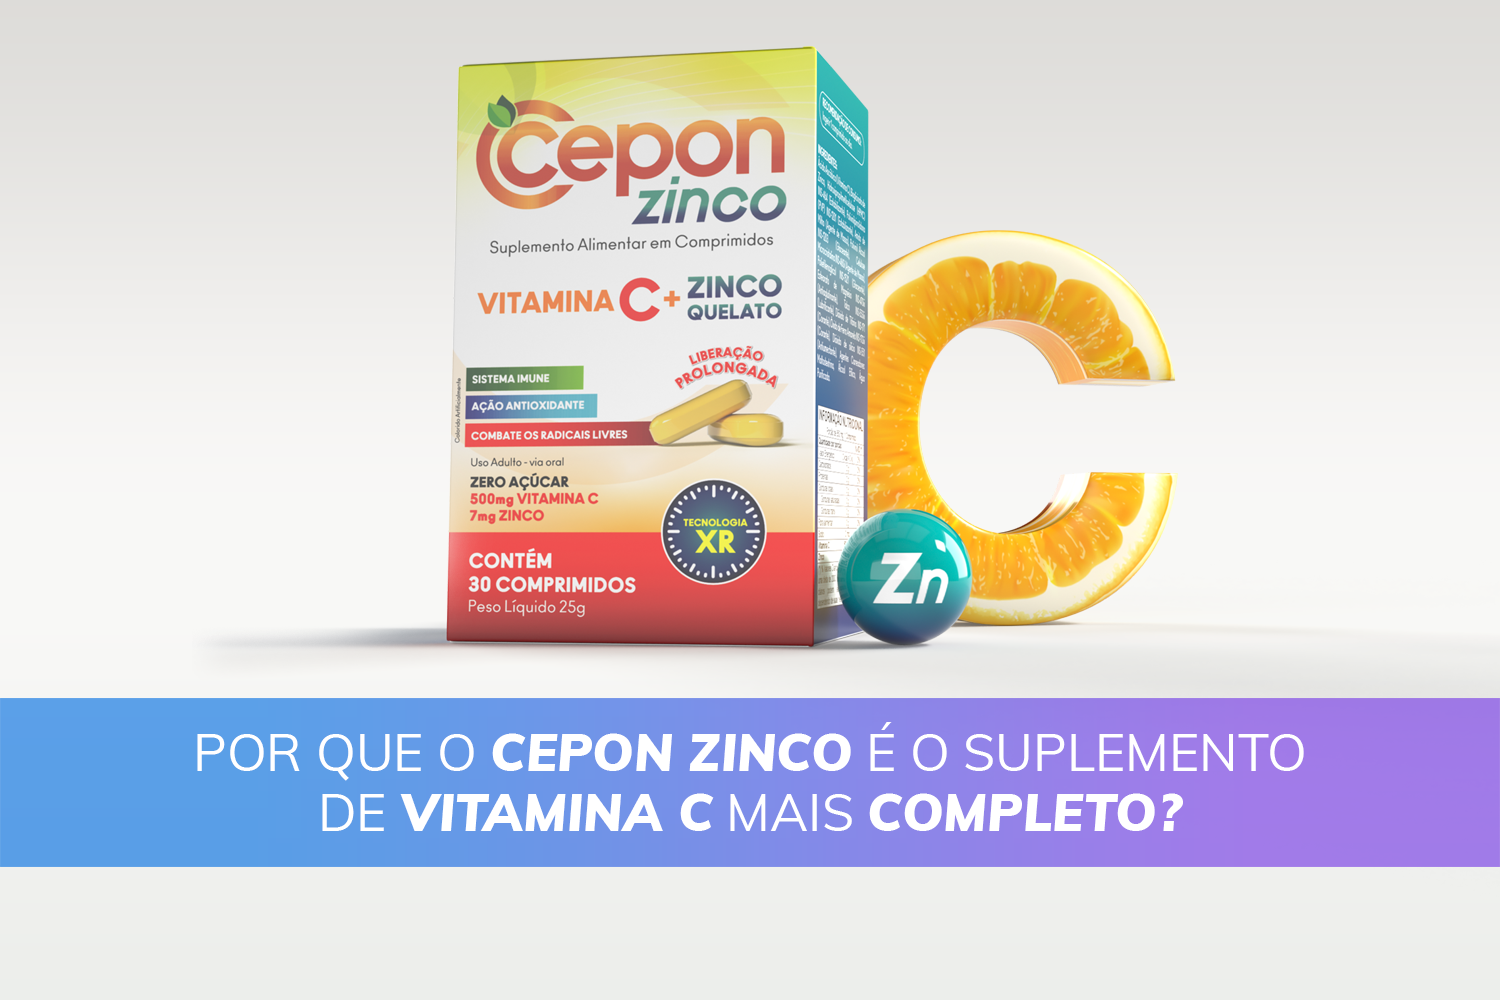 Cepon Zinco